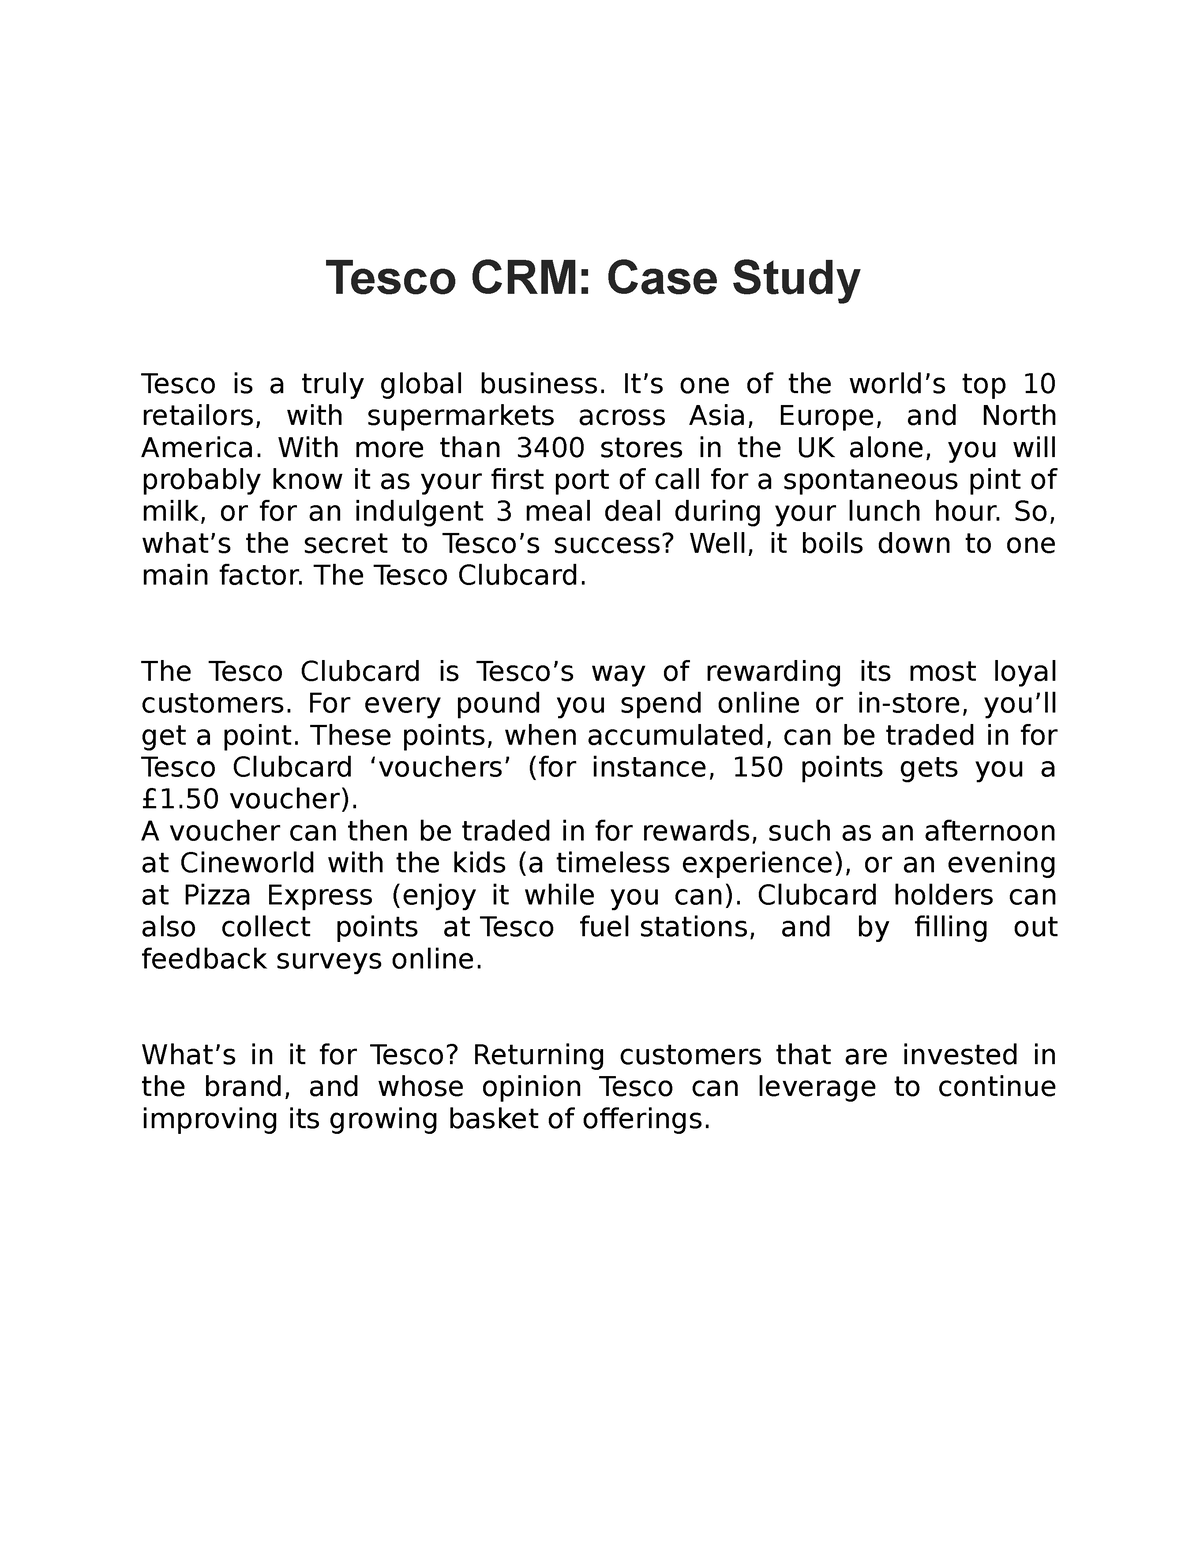 tesco crm case study